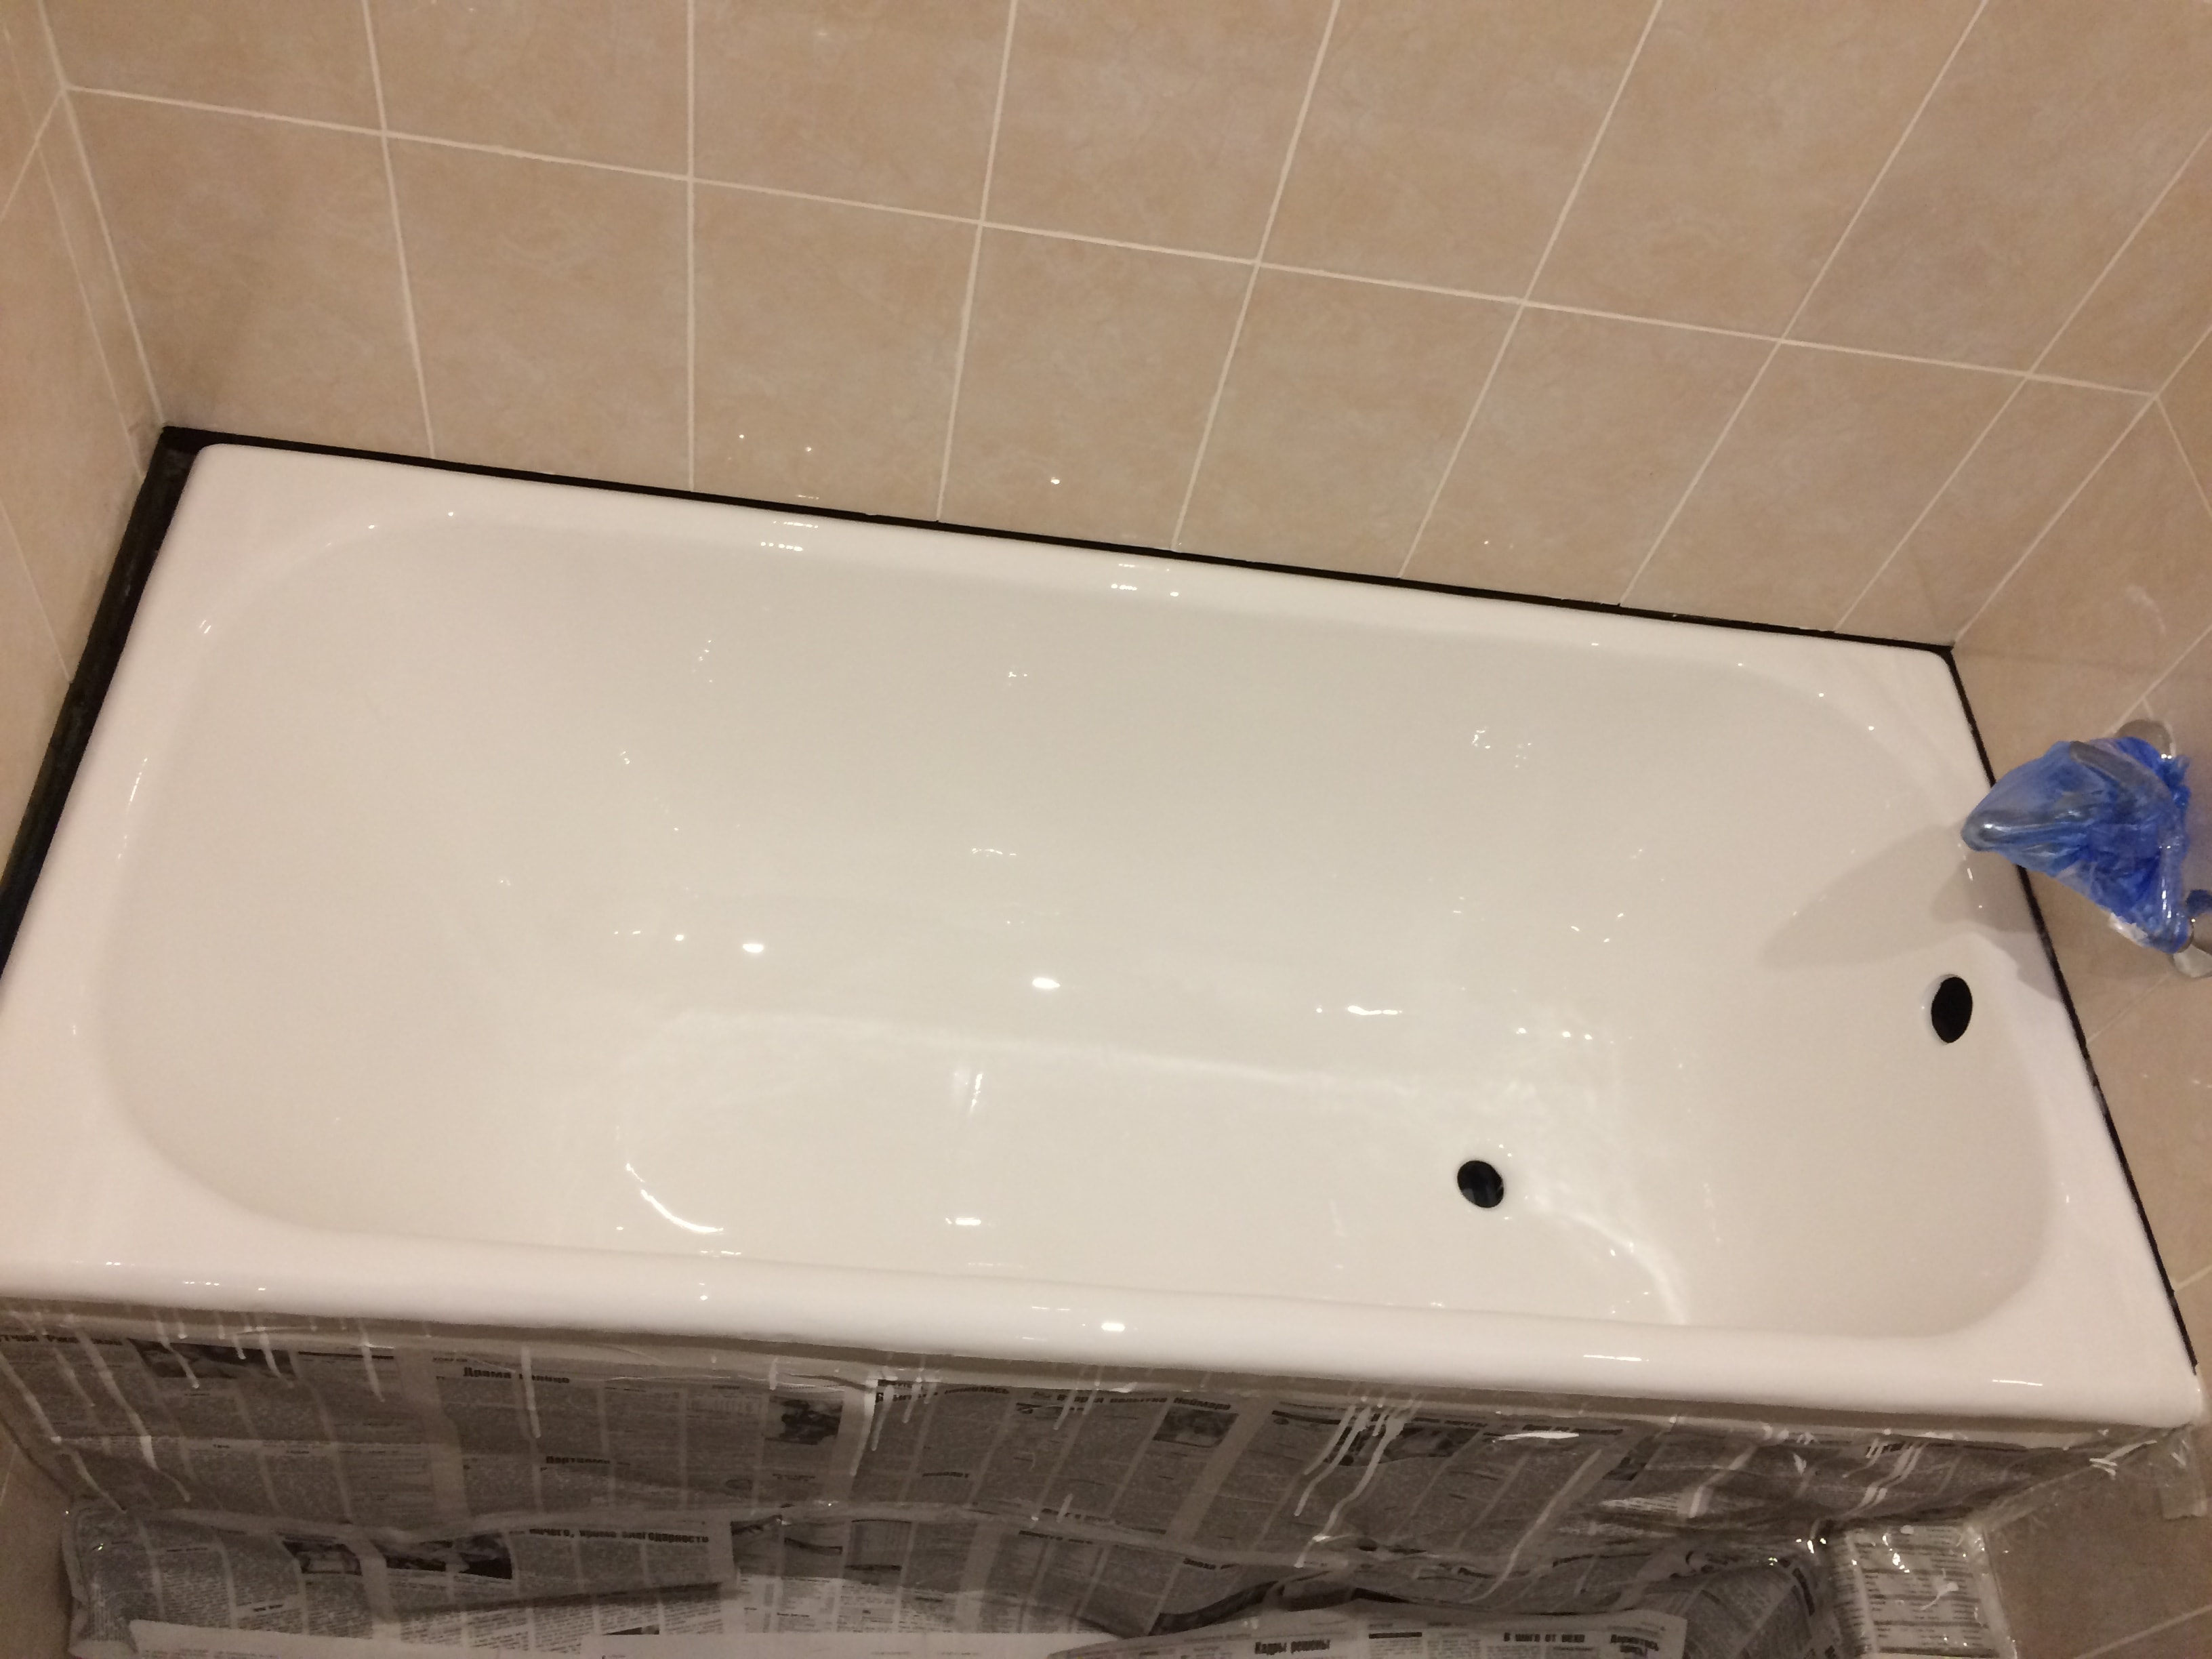 Реставрация ванны телефон